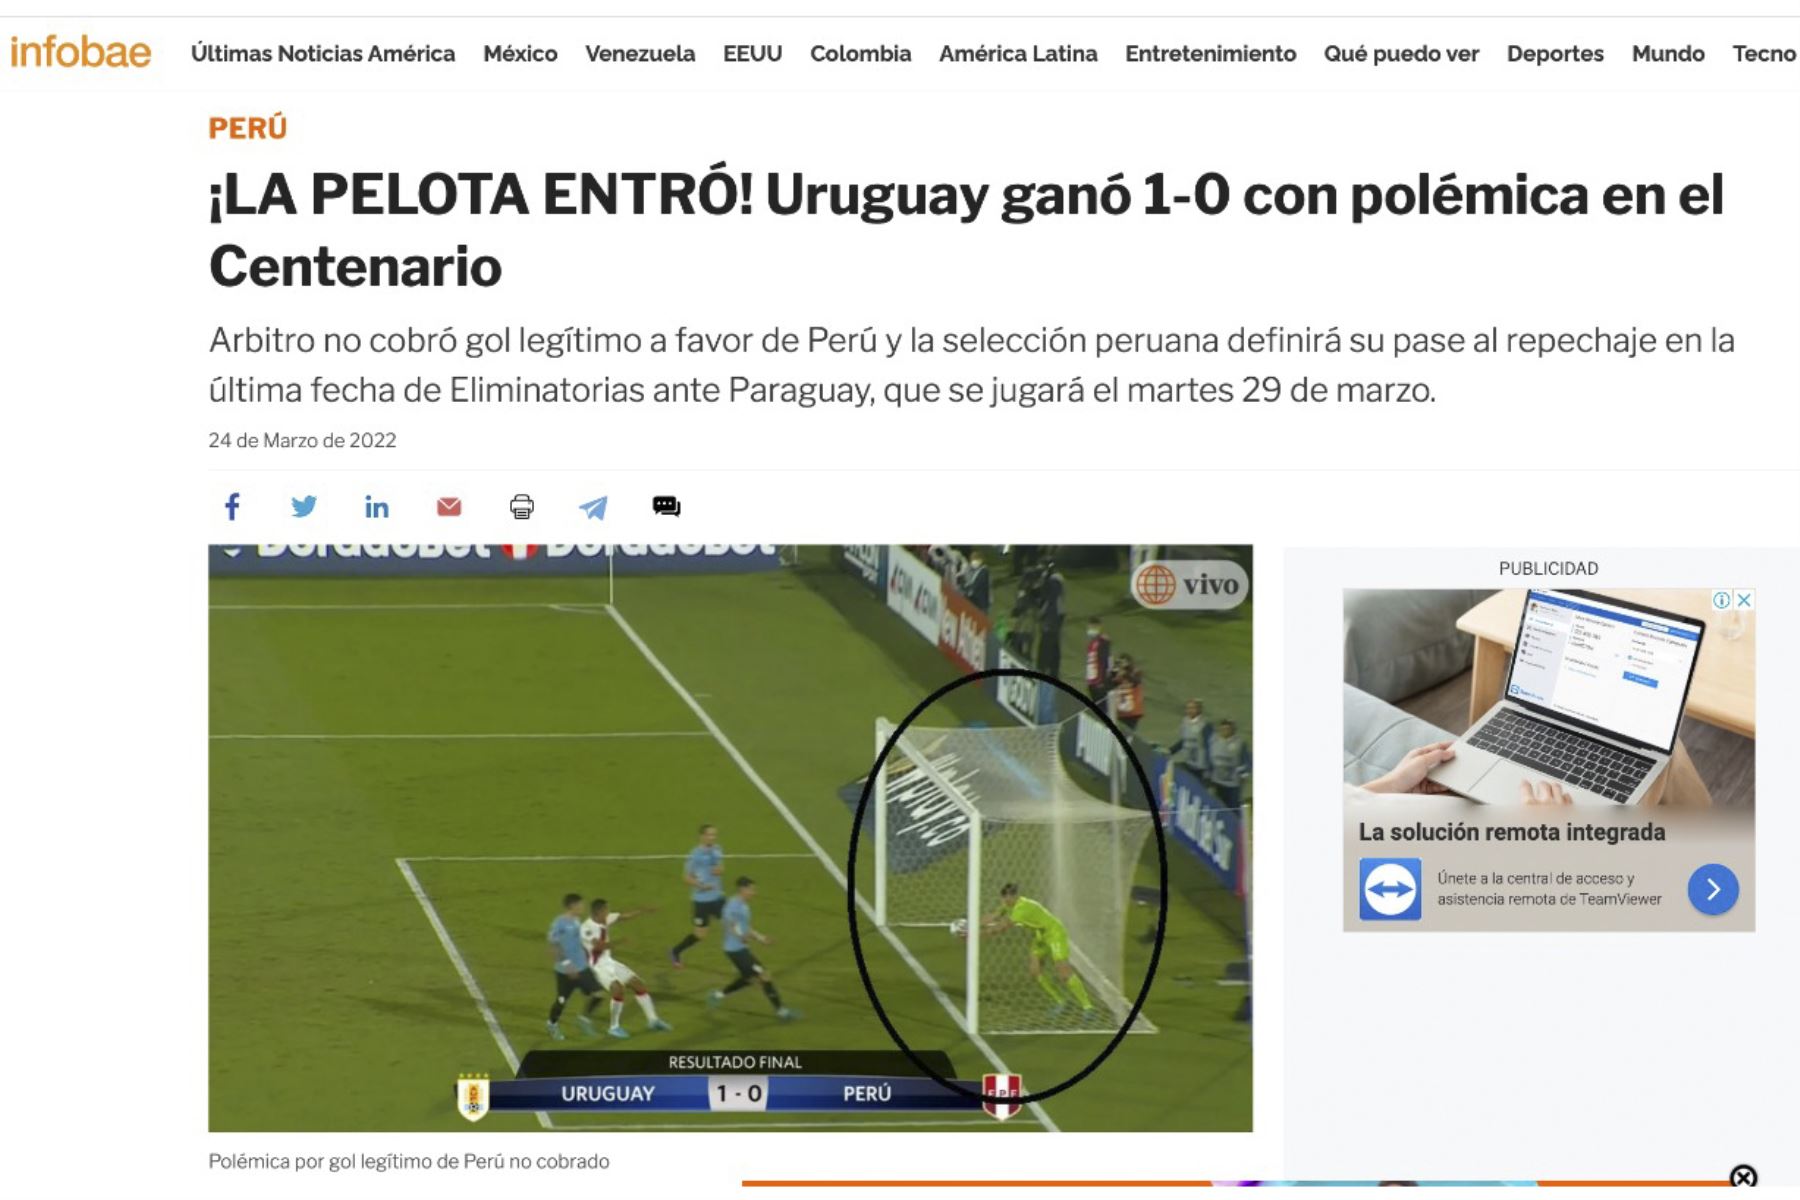 Así informa la prensa nacional e internacional sobre el gol que el árbitro no convalidó en el partido Perú vs. Uruguay en Montevideo. Foto: Captura